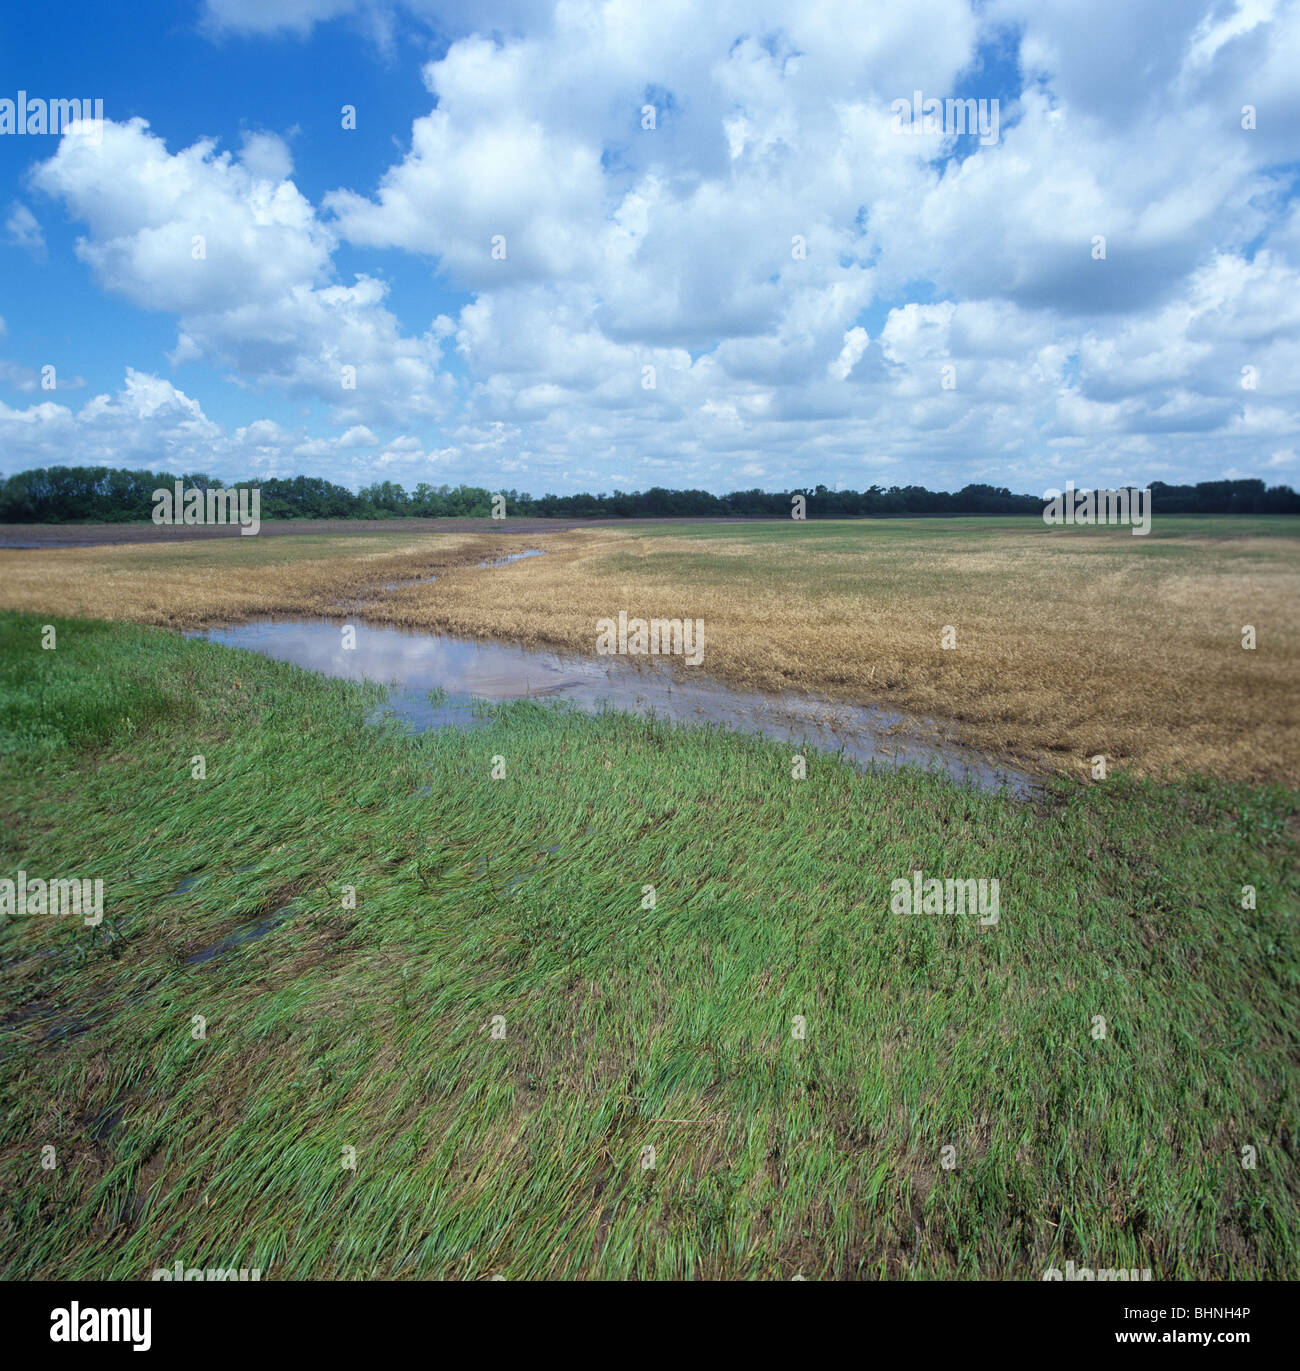 Los cultivos de trigo cerca de un río destruidas por las inundaciones provocadas por lluvias torrenciales, Kansas, EE.UU. Foto de stock